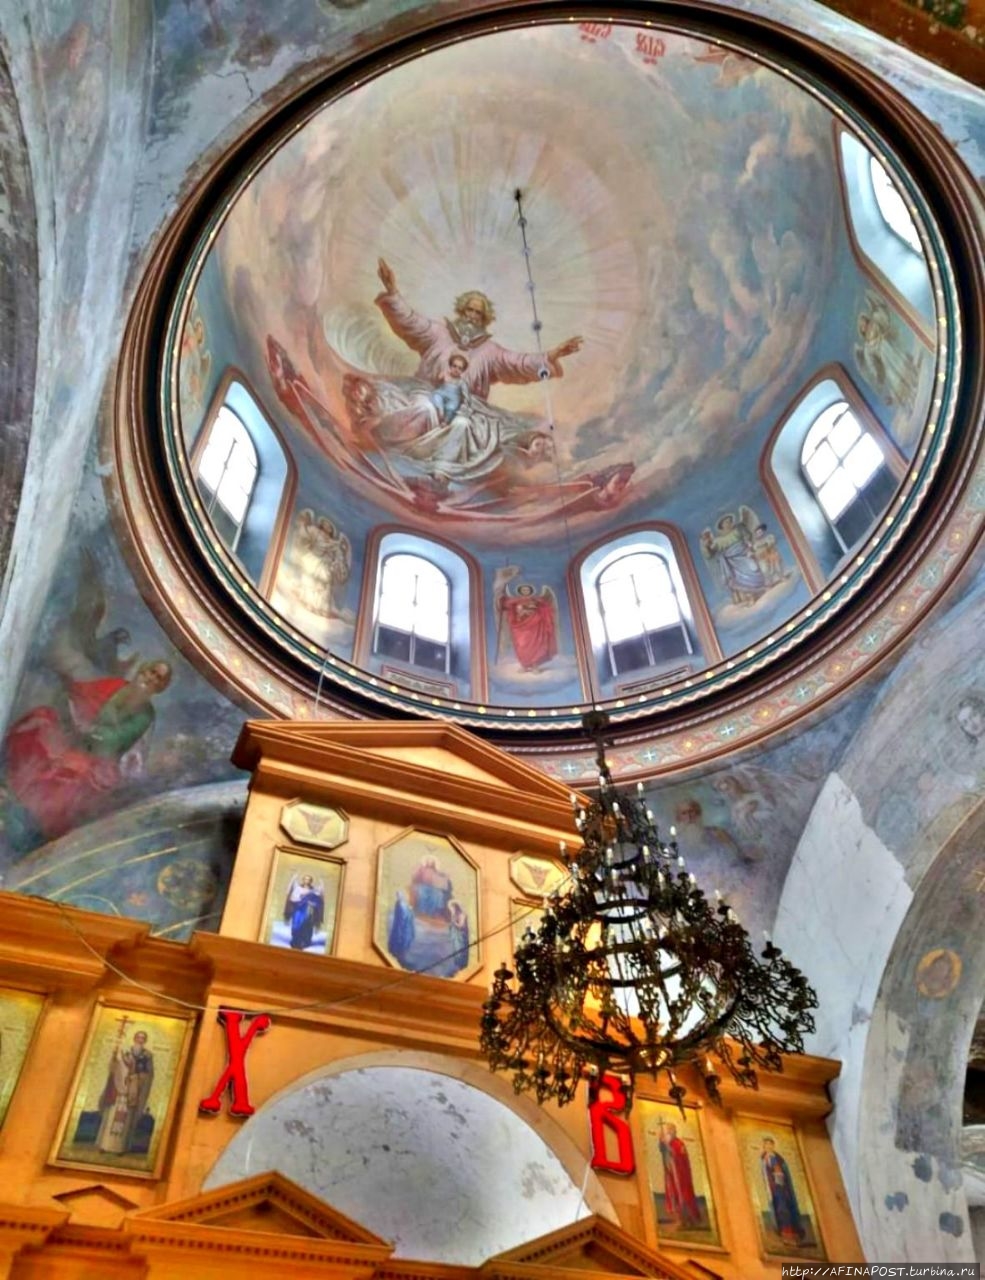 Церковь Иерусалимской иконы Божией Матери Бронницы, Россия